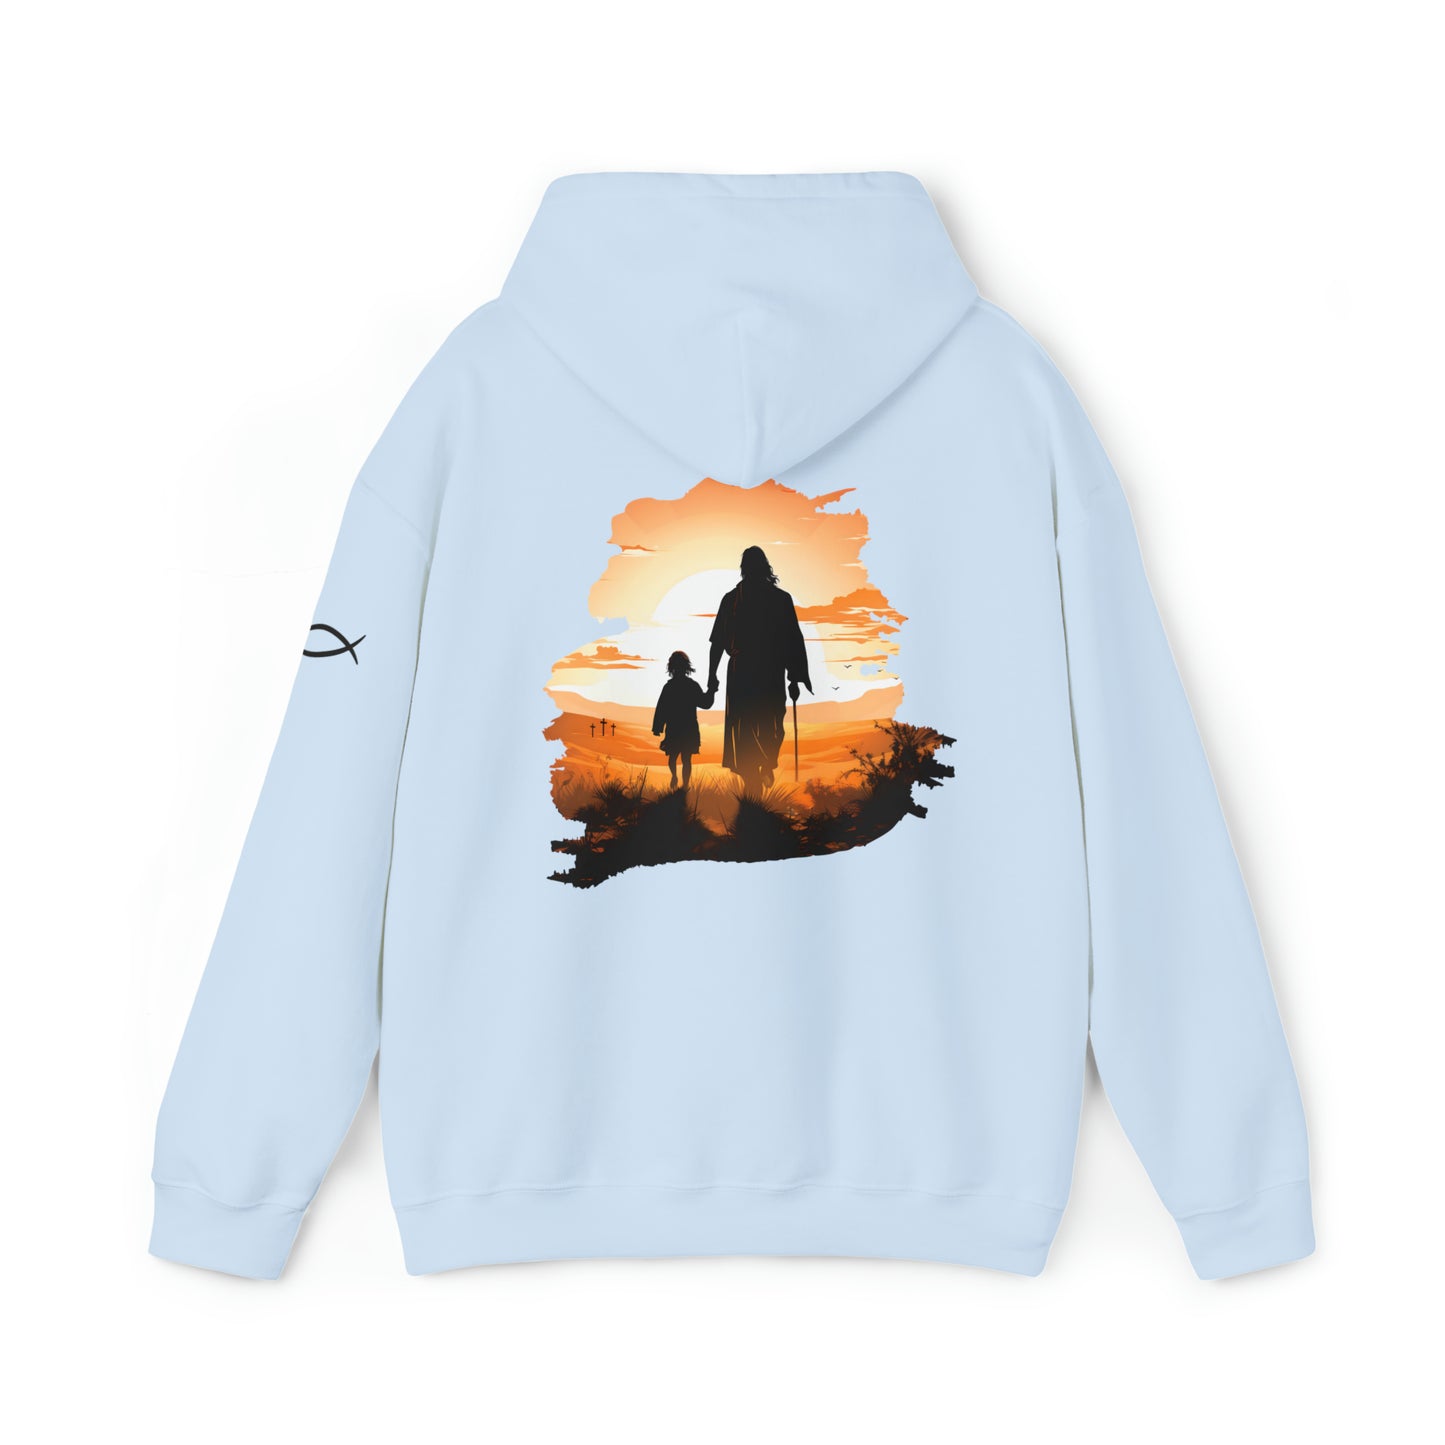 Christian Hooded Sweatshirt - Jesus The Good Shepherd - Unisex